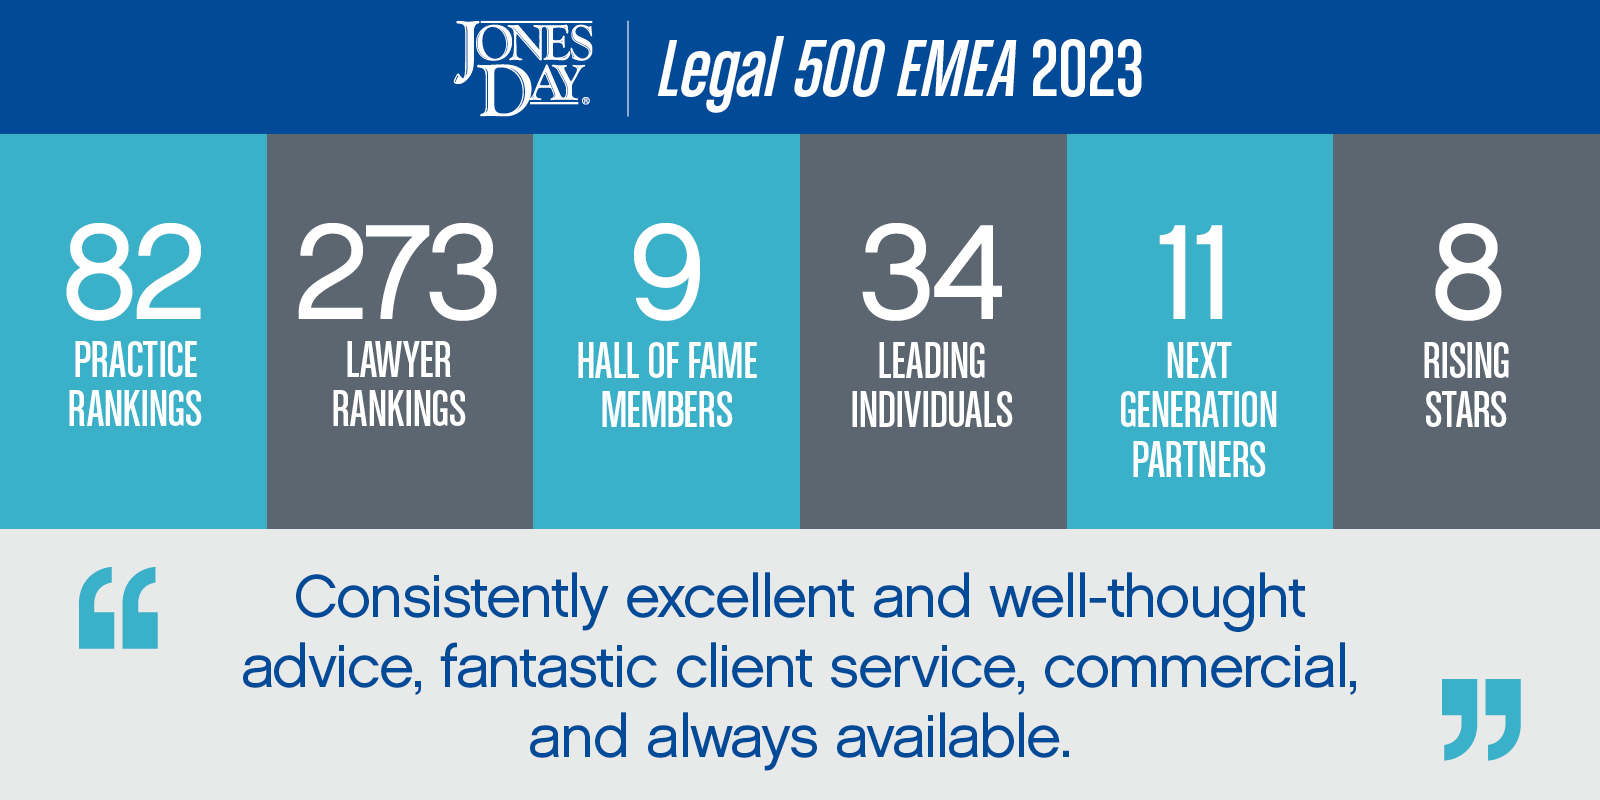 Legal 500 EMEA Jones Day Lawyers